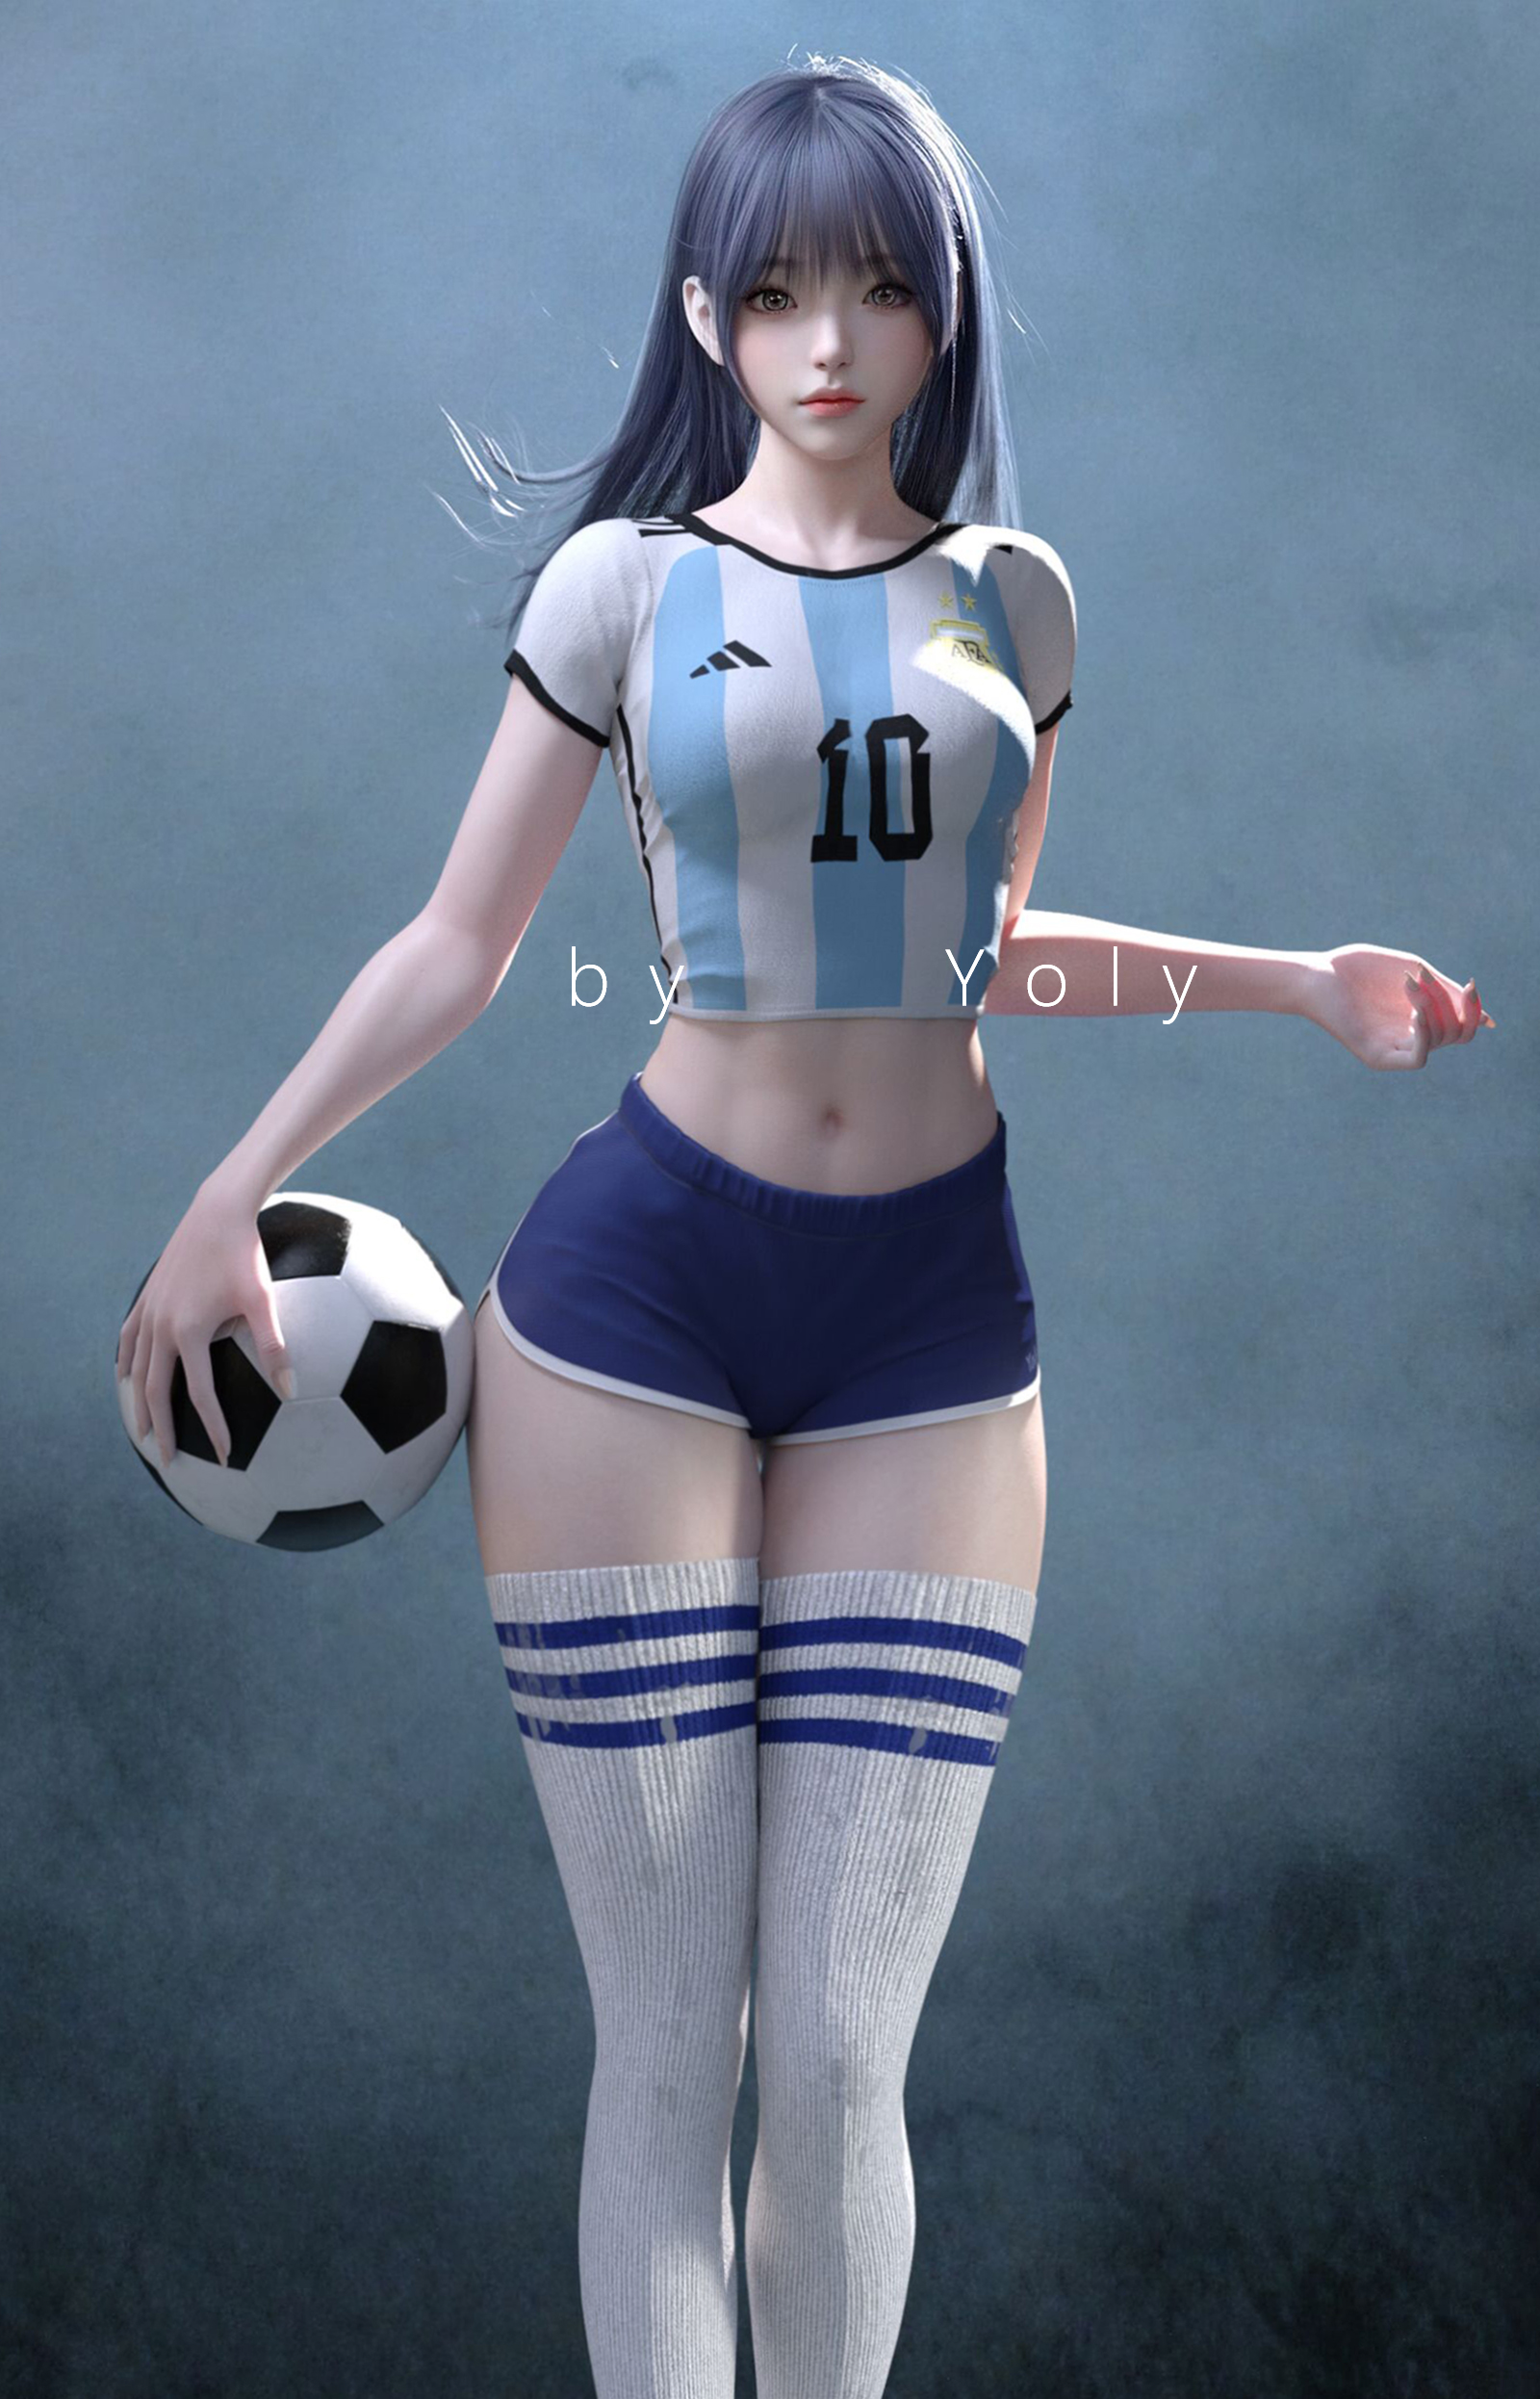 General 1600x2492 Yoly Argentina soccer soccer girls soccer ball stockings white stockings Asian CGI digital art artwork vertical short shorts